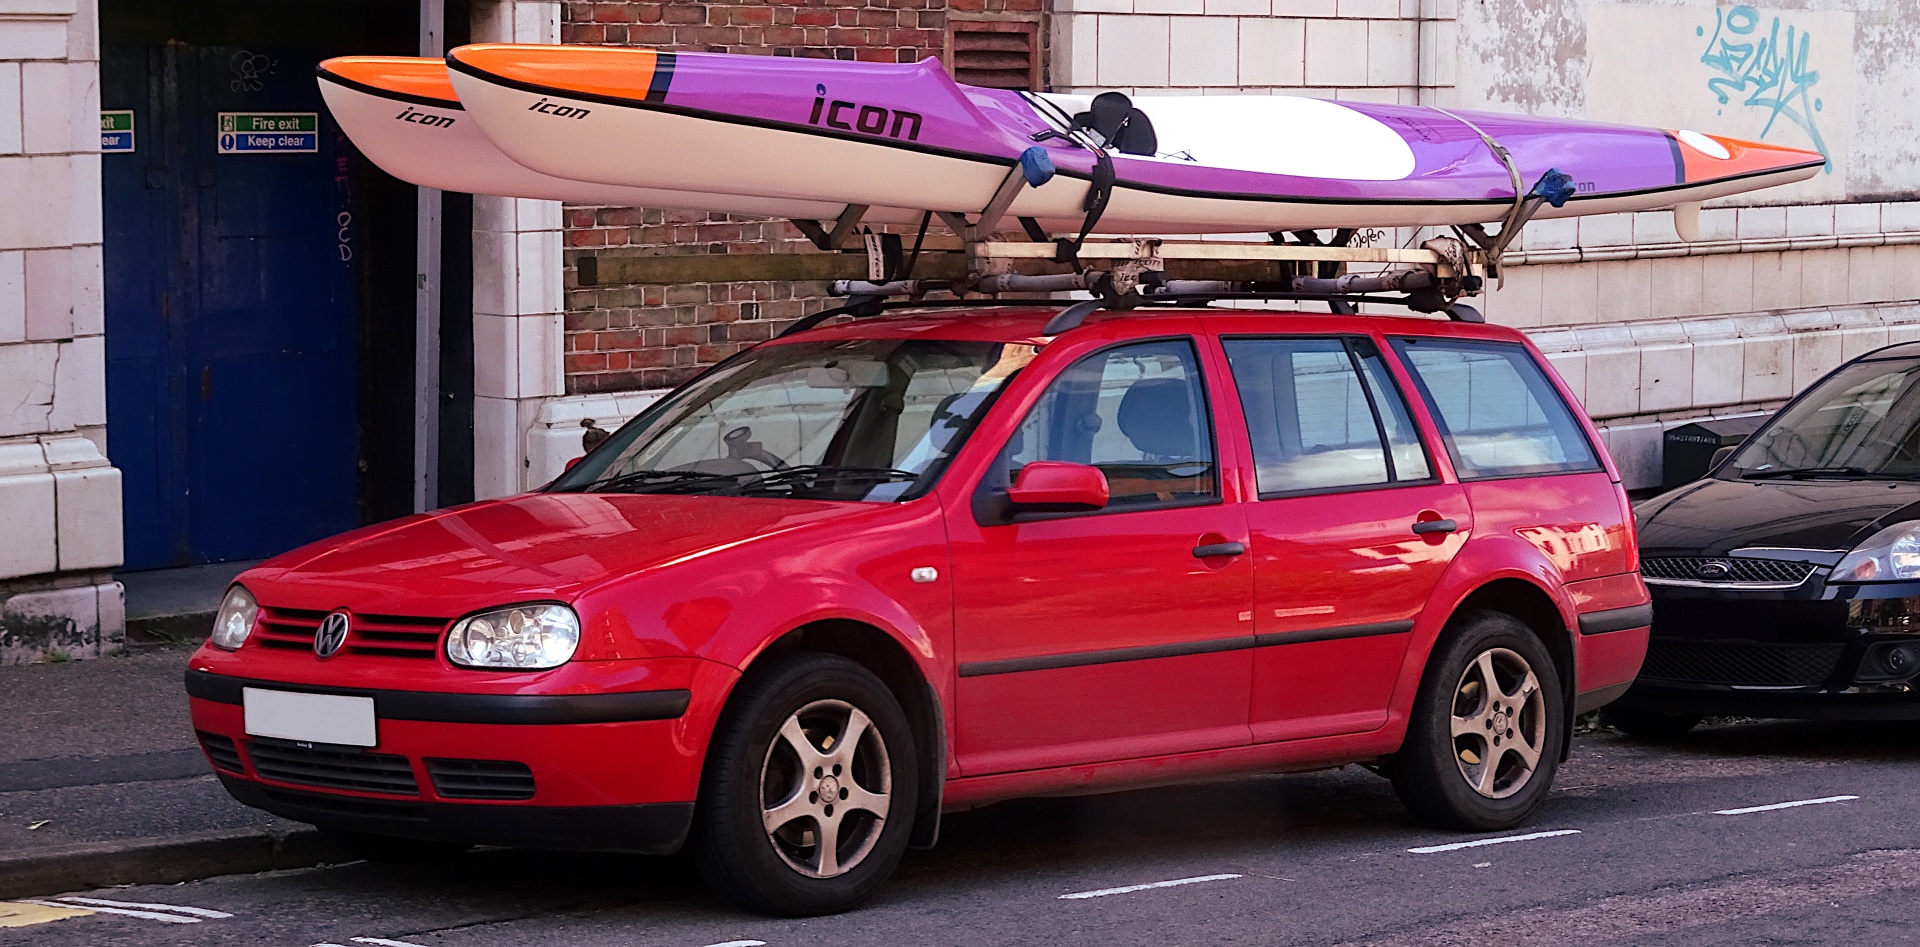 Volkswagen Transporting Kayaks